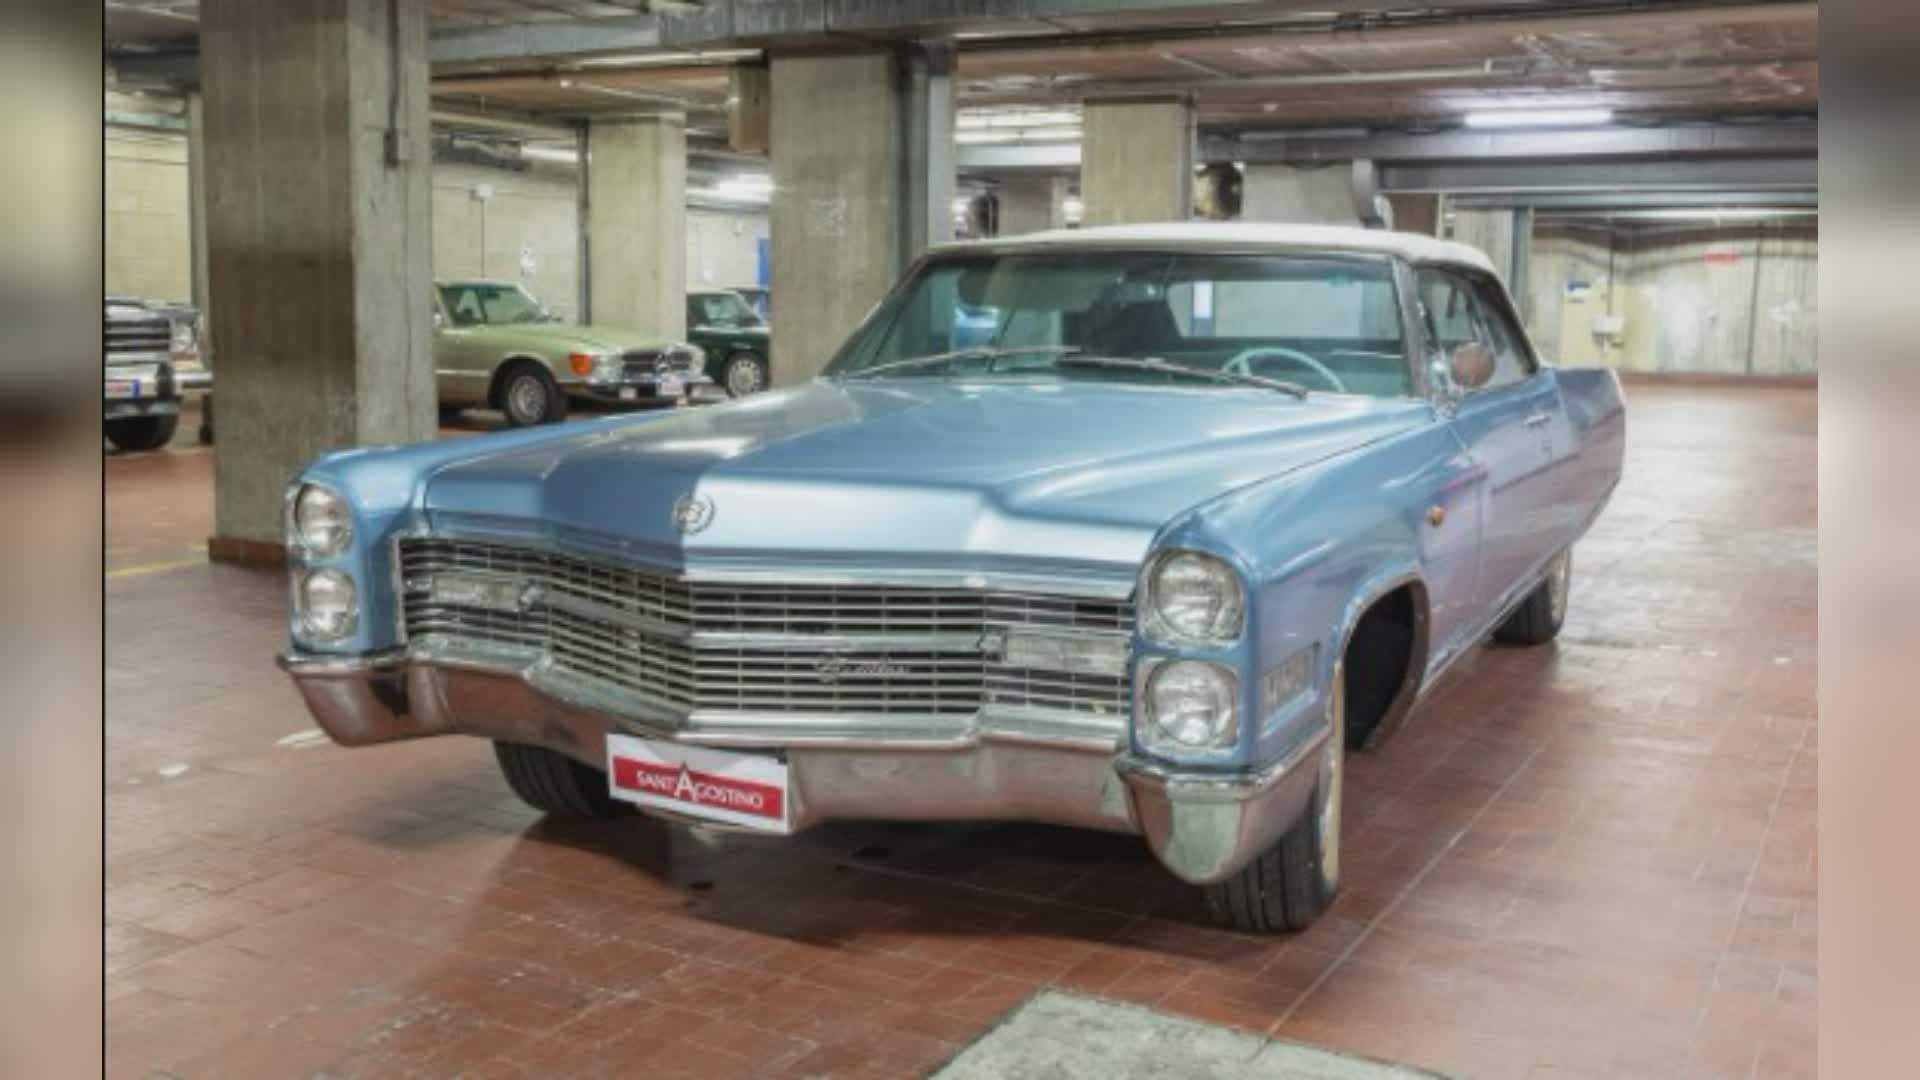 Vialli: all'asta la Cadillac Eldorado 1966 del campione scomparso